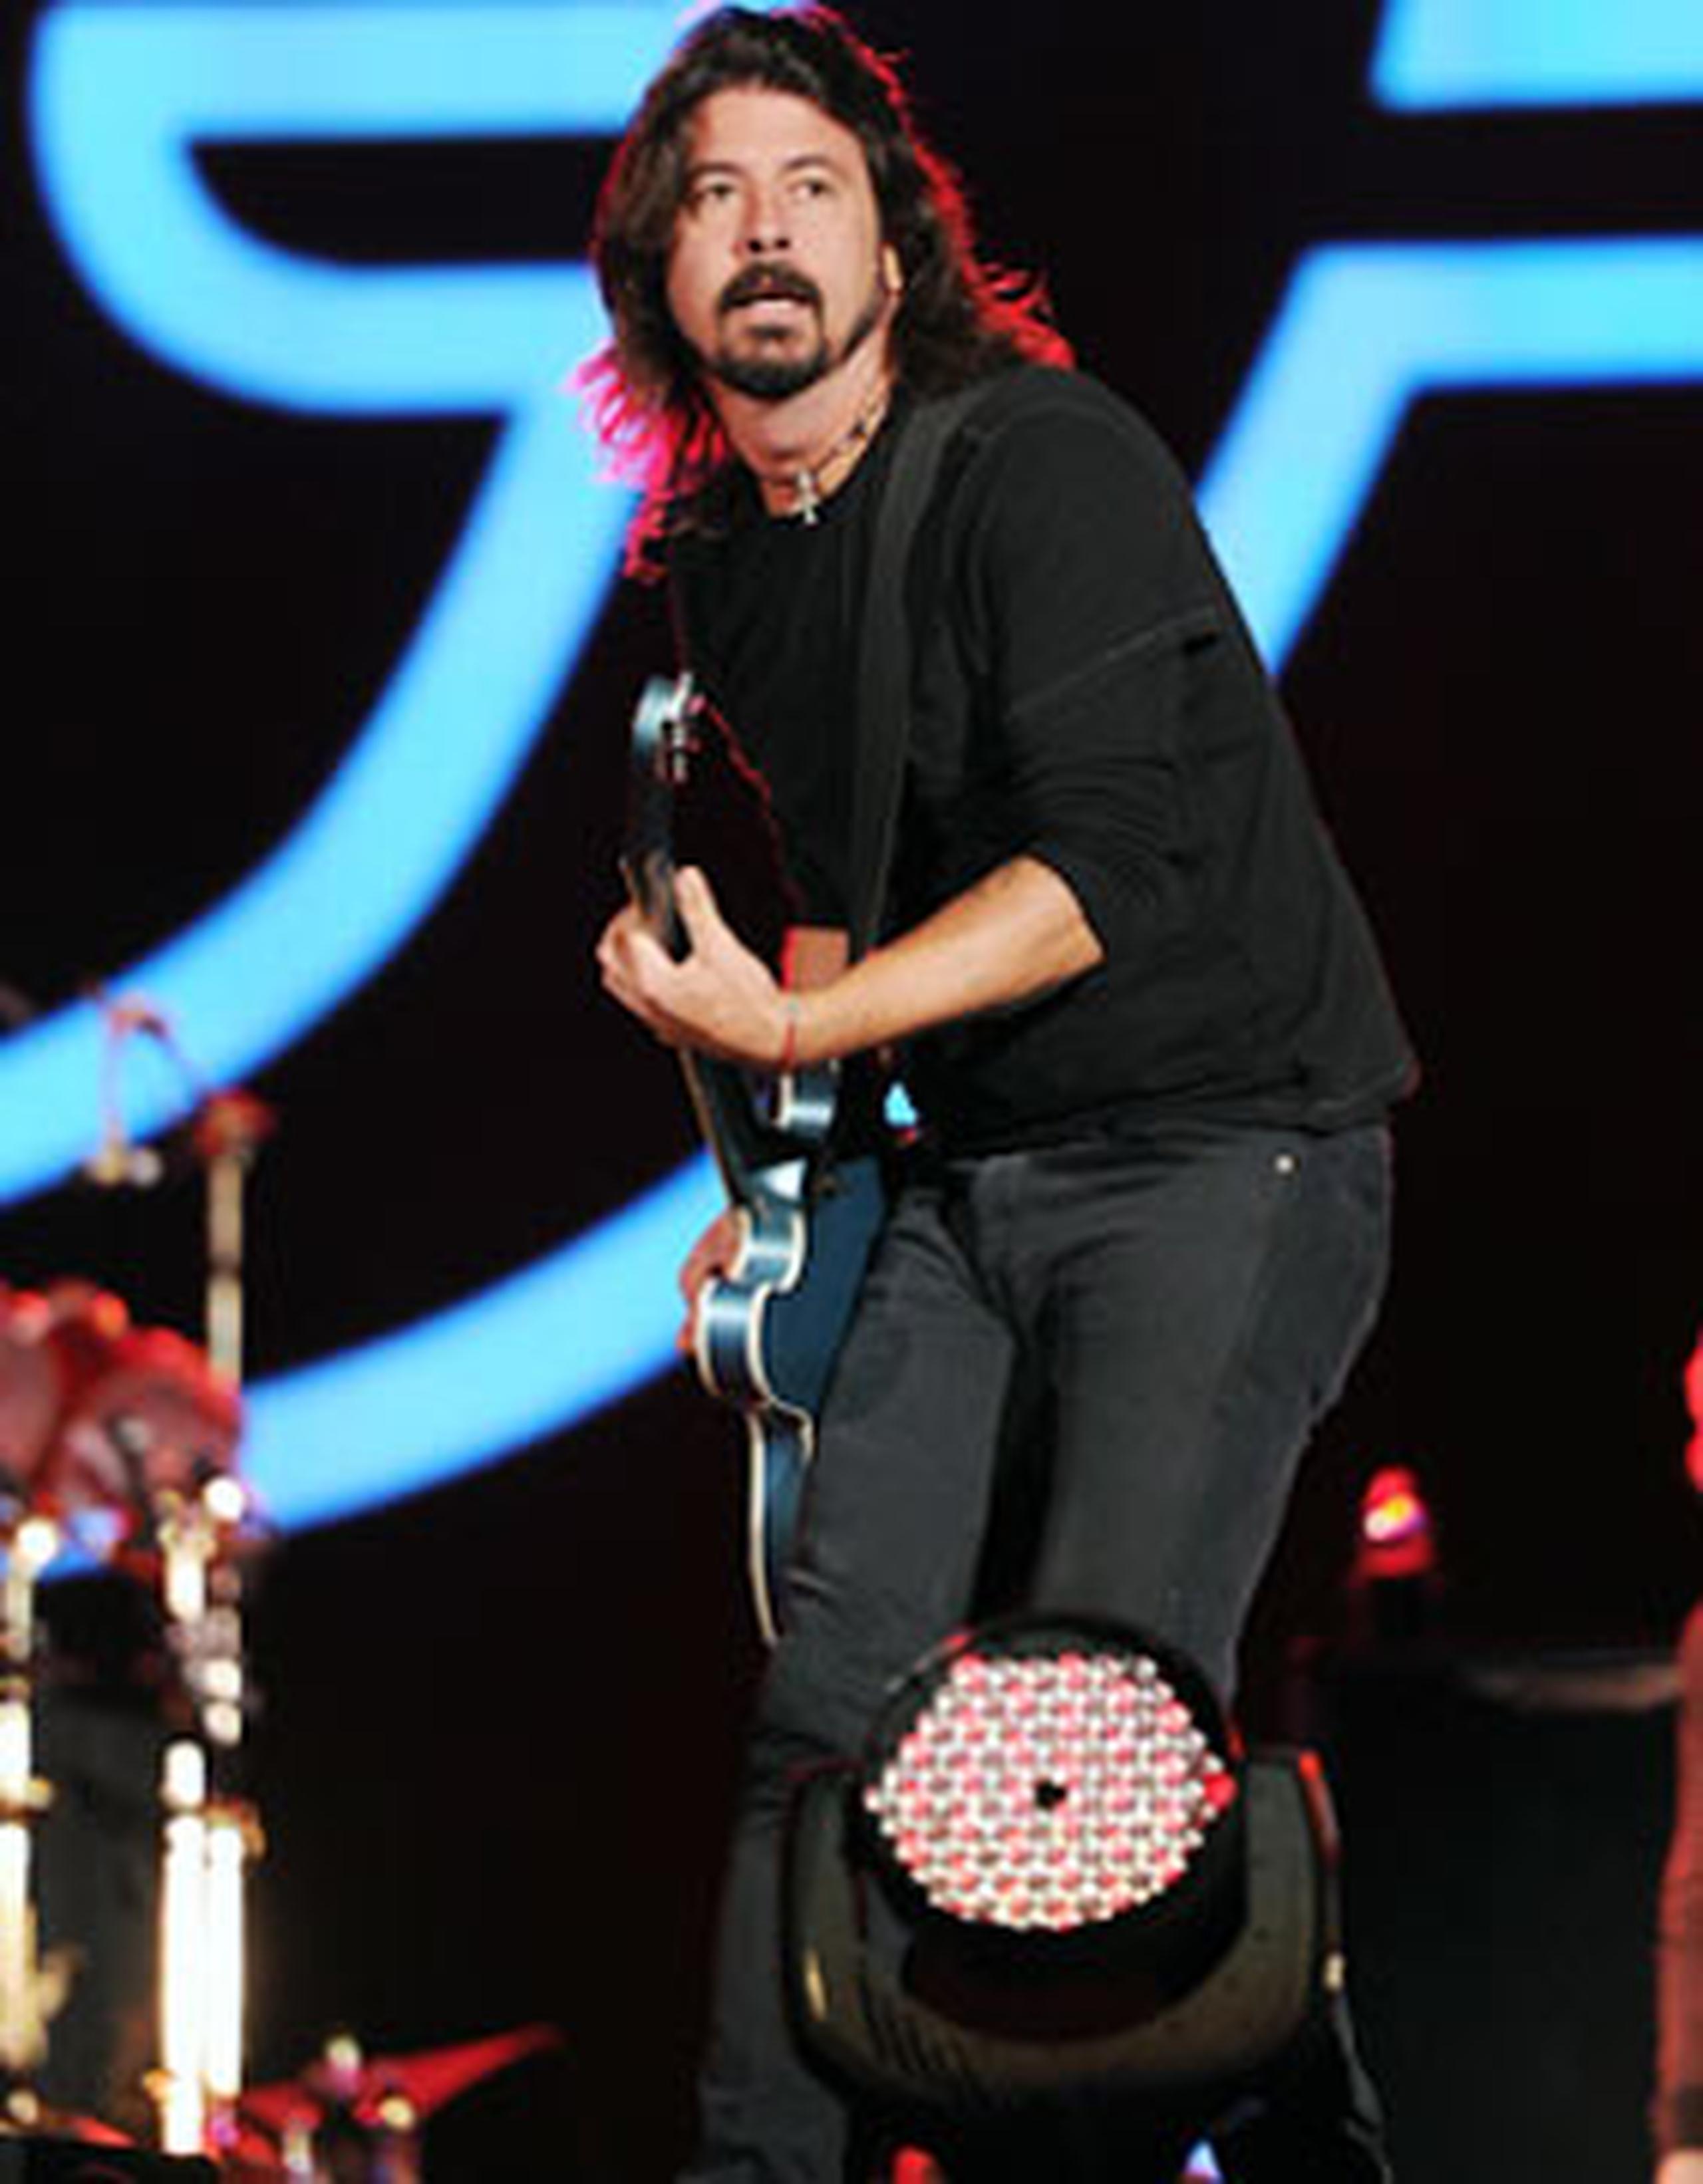 Dave Grohl, vocalista de Foo Fighters, emitió una carta abierta hoy en la que dice que el grupo es "mi vida" pero agregó que "es bueno para nosotros separarnos por un rato".